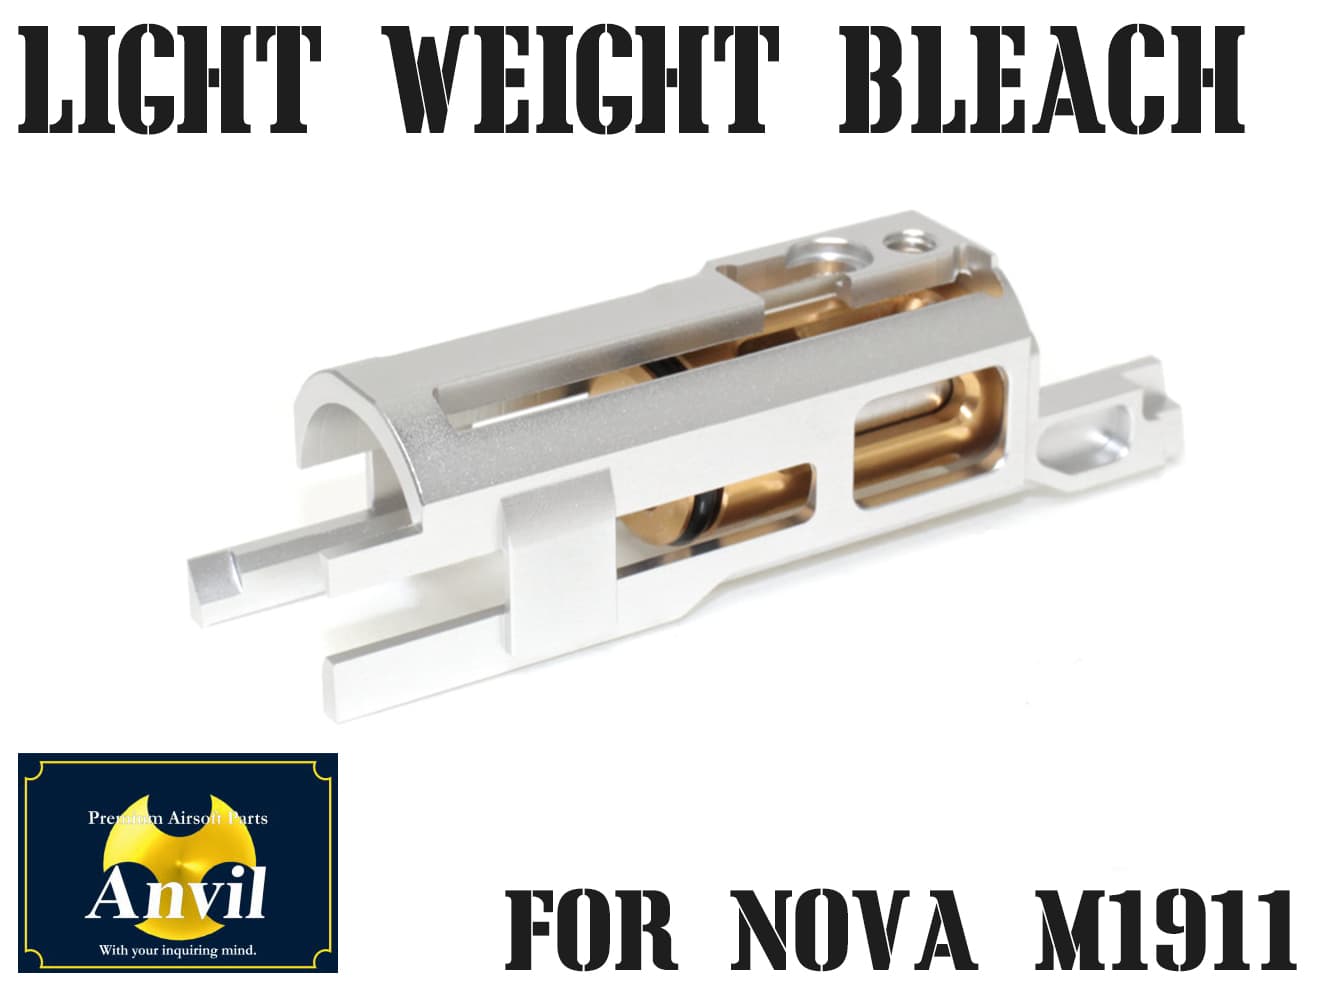 楽天市場 送料無料 Anvil Cnc アルミライトウェイトブリーチ シルバー Nova M1911コンバージョンキット専用 アルミハウジング ガバメント ミリタリーベース